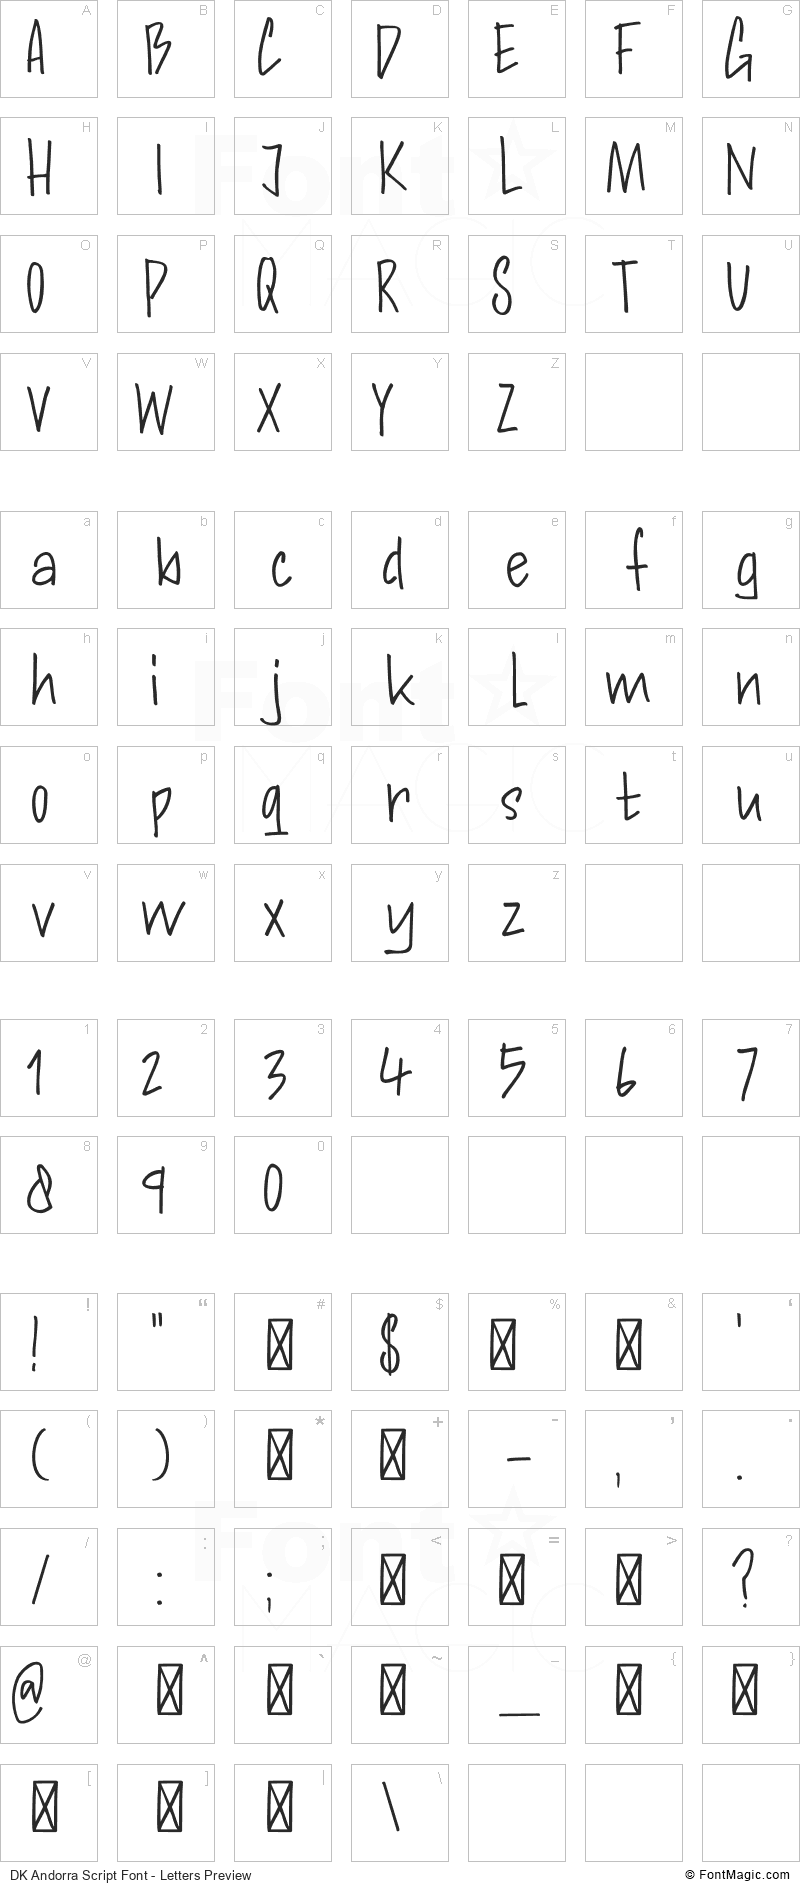 DK Andorra Script Font - All Latters Preview Chart